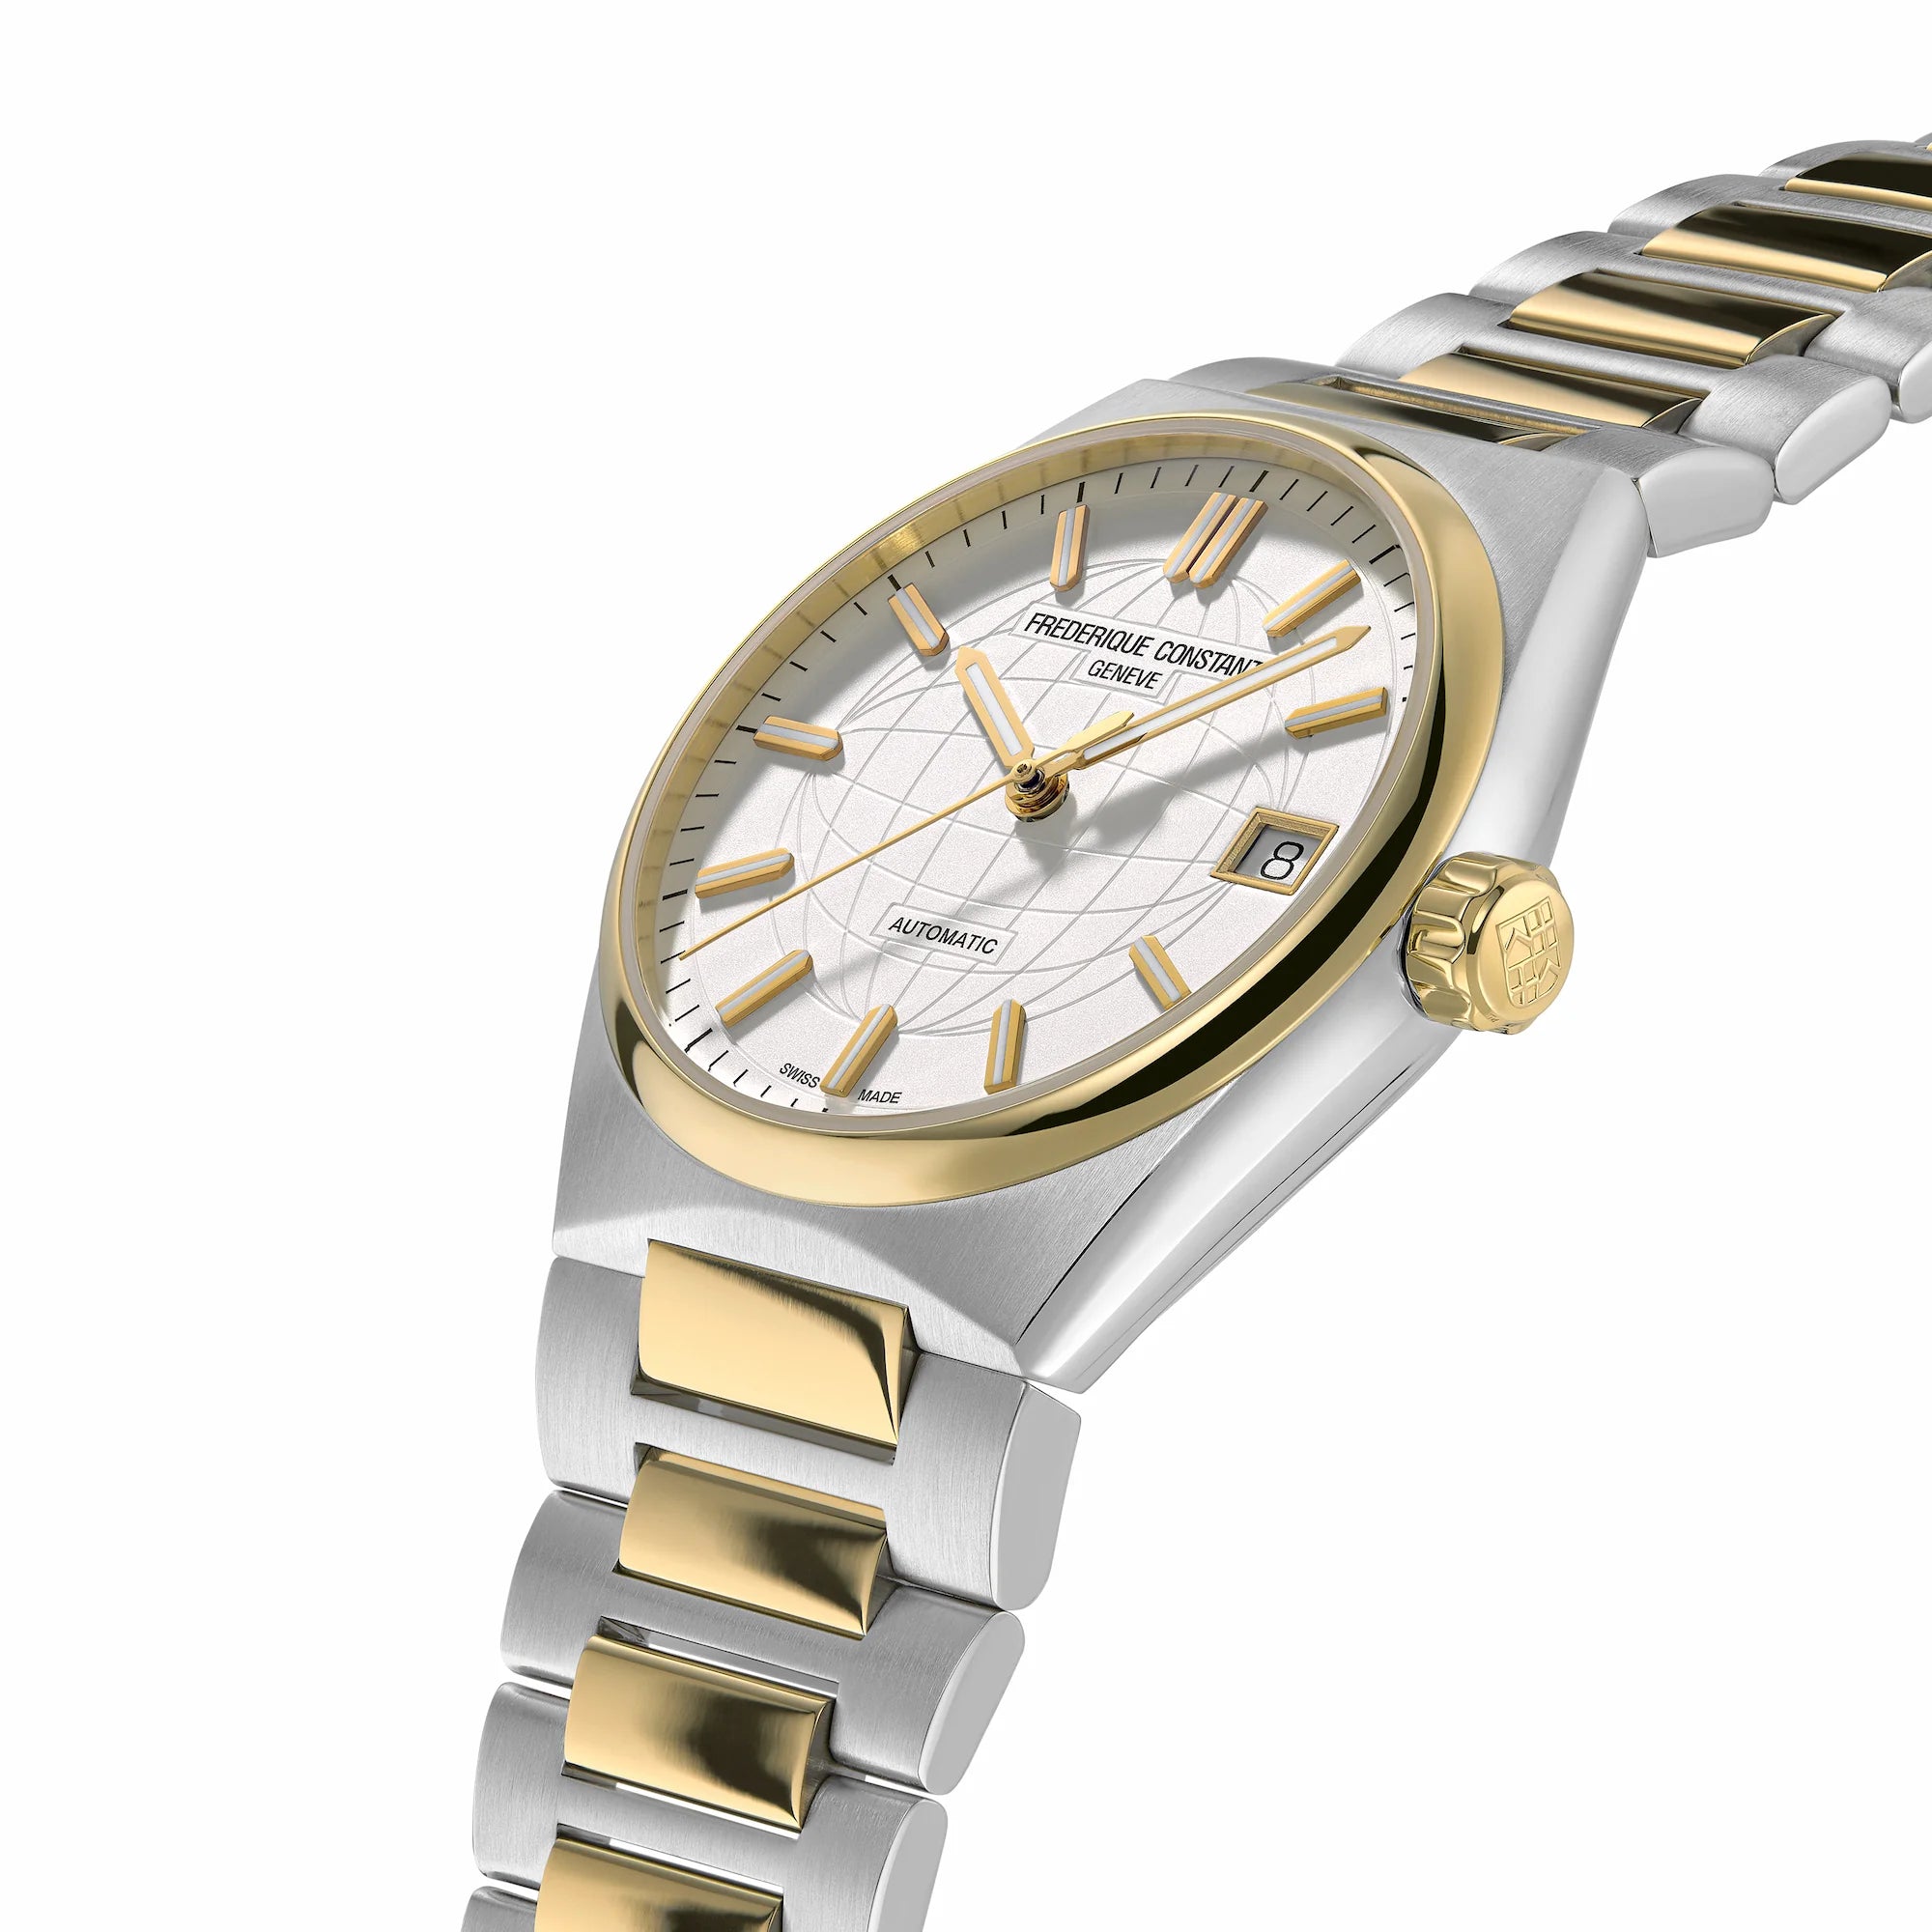 Leicht seitliche Ansicht der Frederique Constant Uhr "Highlife Ladies Automatic" mit einem weißen Zifferblatt und Stahl-Gold-Gehäuse